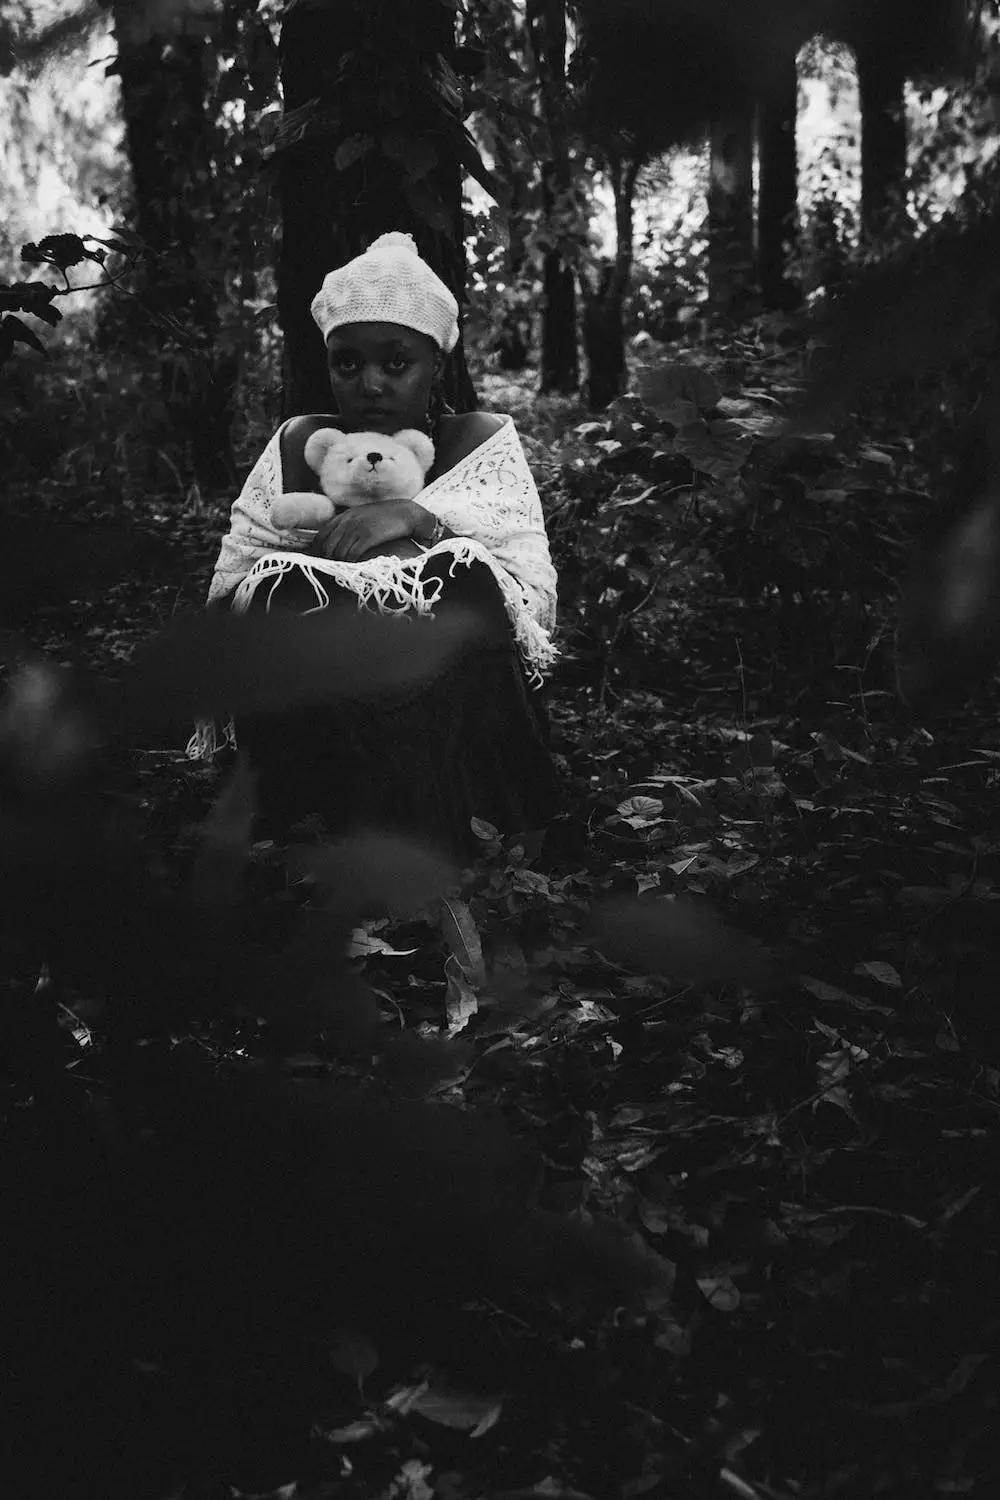 Woman holding teddy bear